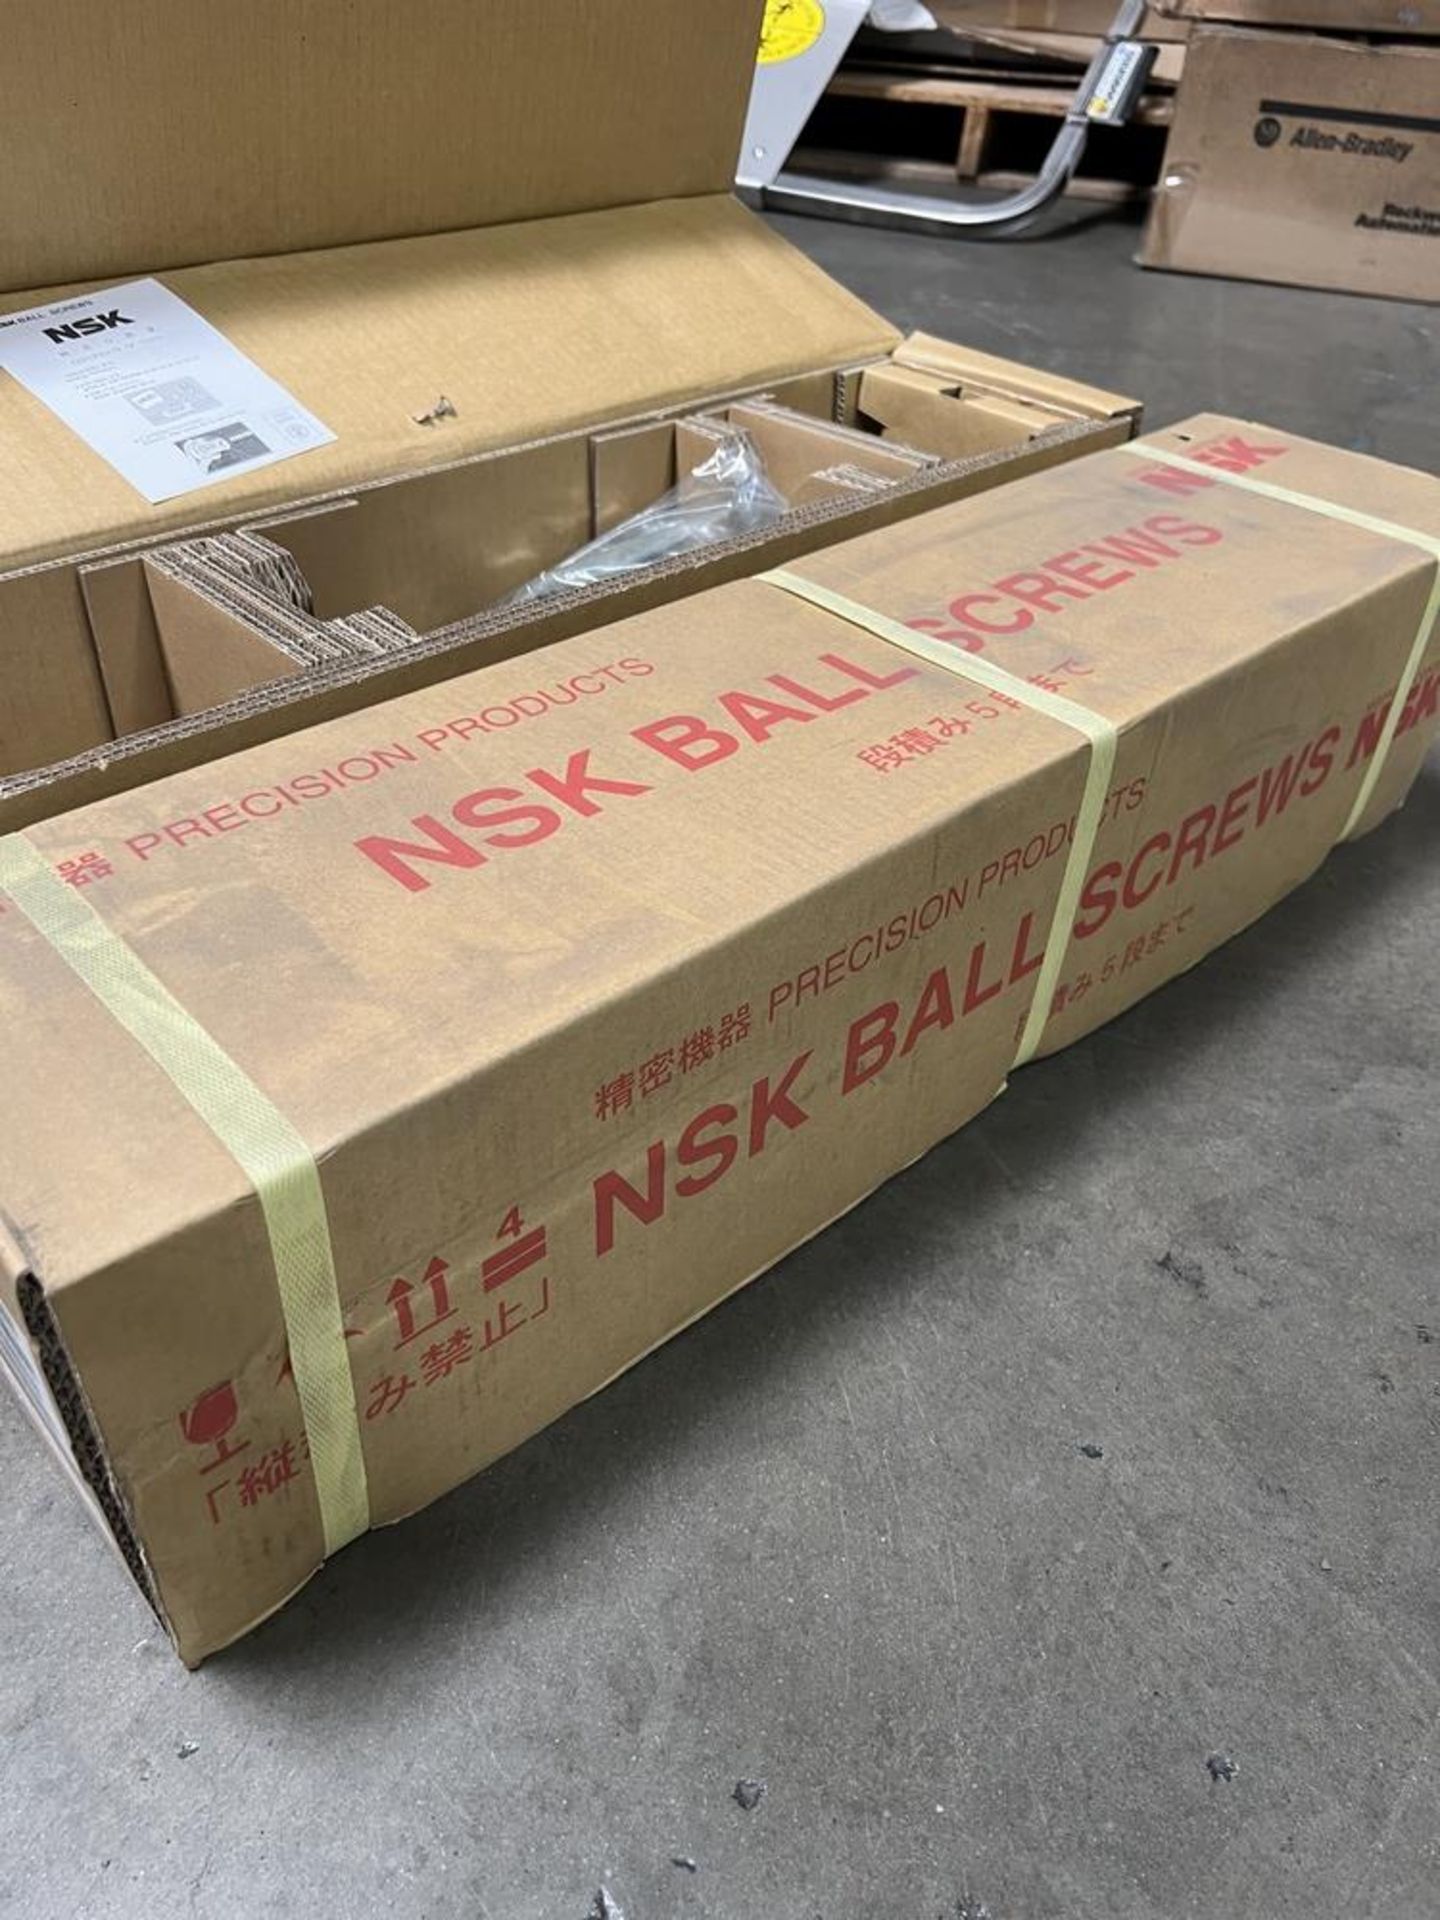 (2) NSK Ball Screws New In Box, W4004W-31SS-C7S10 - Image 7 of 9